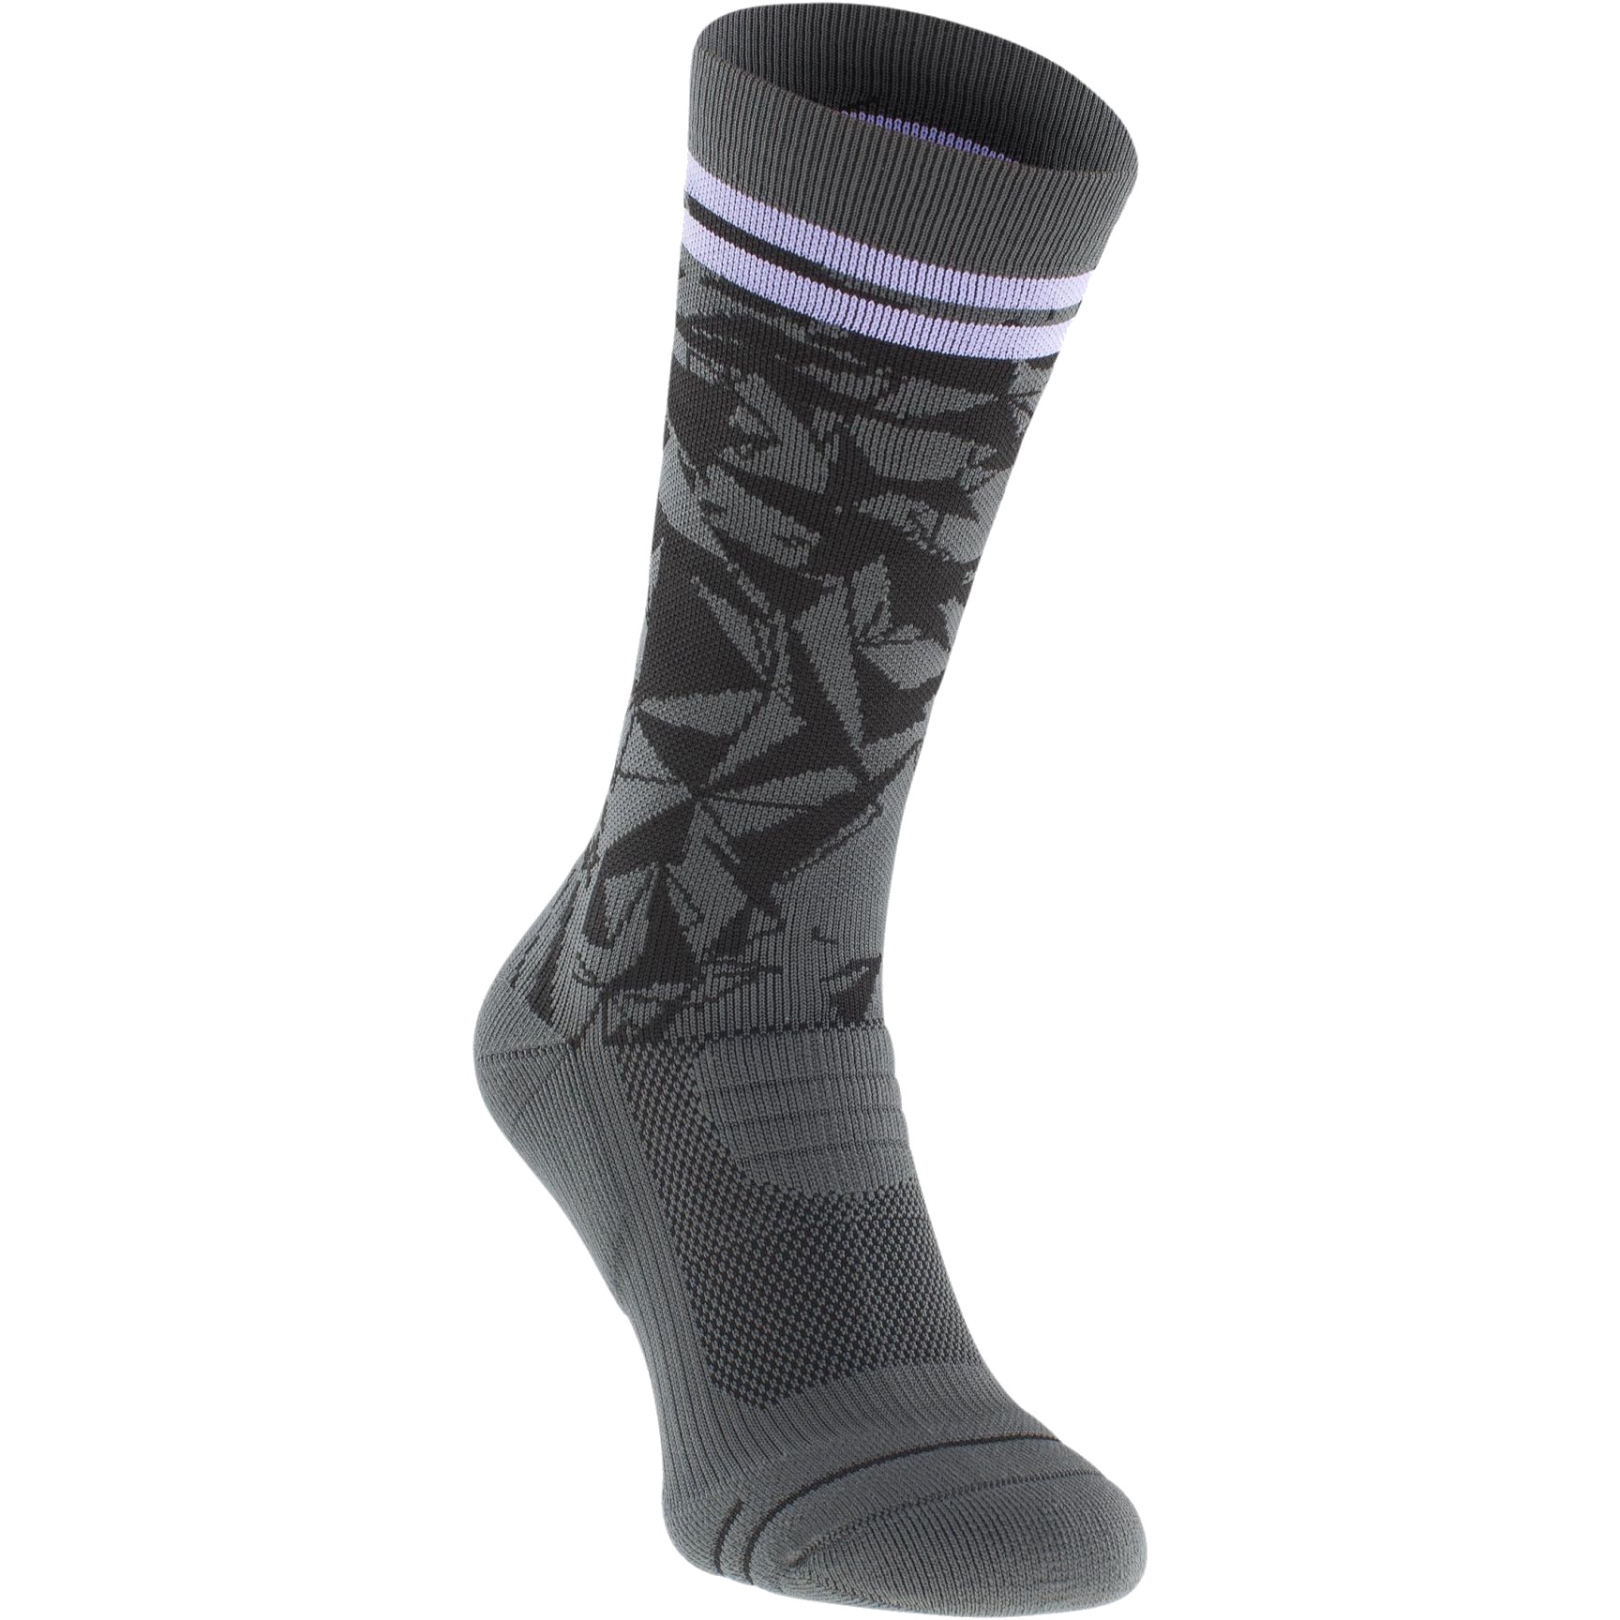 Produktbild von EVOC Socks Medium Socken - Multicolour